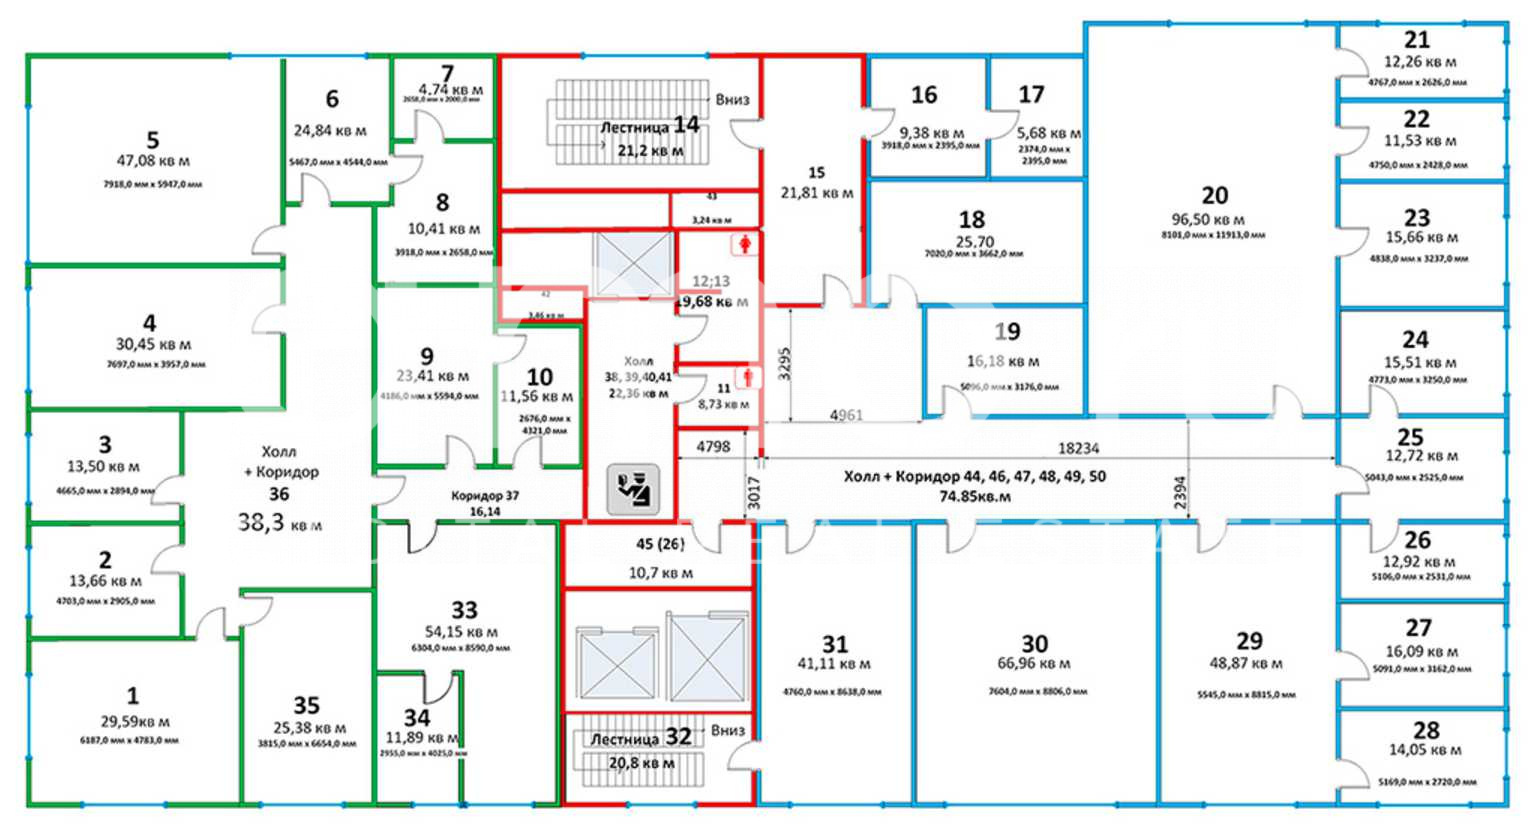 На каком этаже 88 квартира. План авиапарка 4 этаж. Авиапарк план этажей. Авиапарк план 4 этажа. Карта авиапарка 4 этаж.